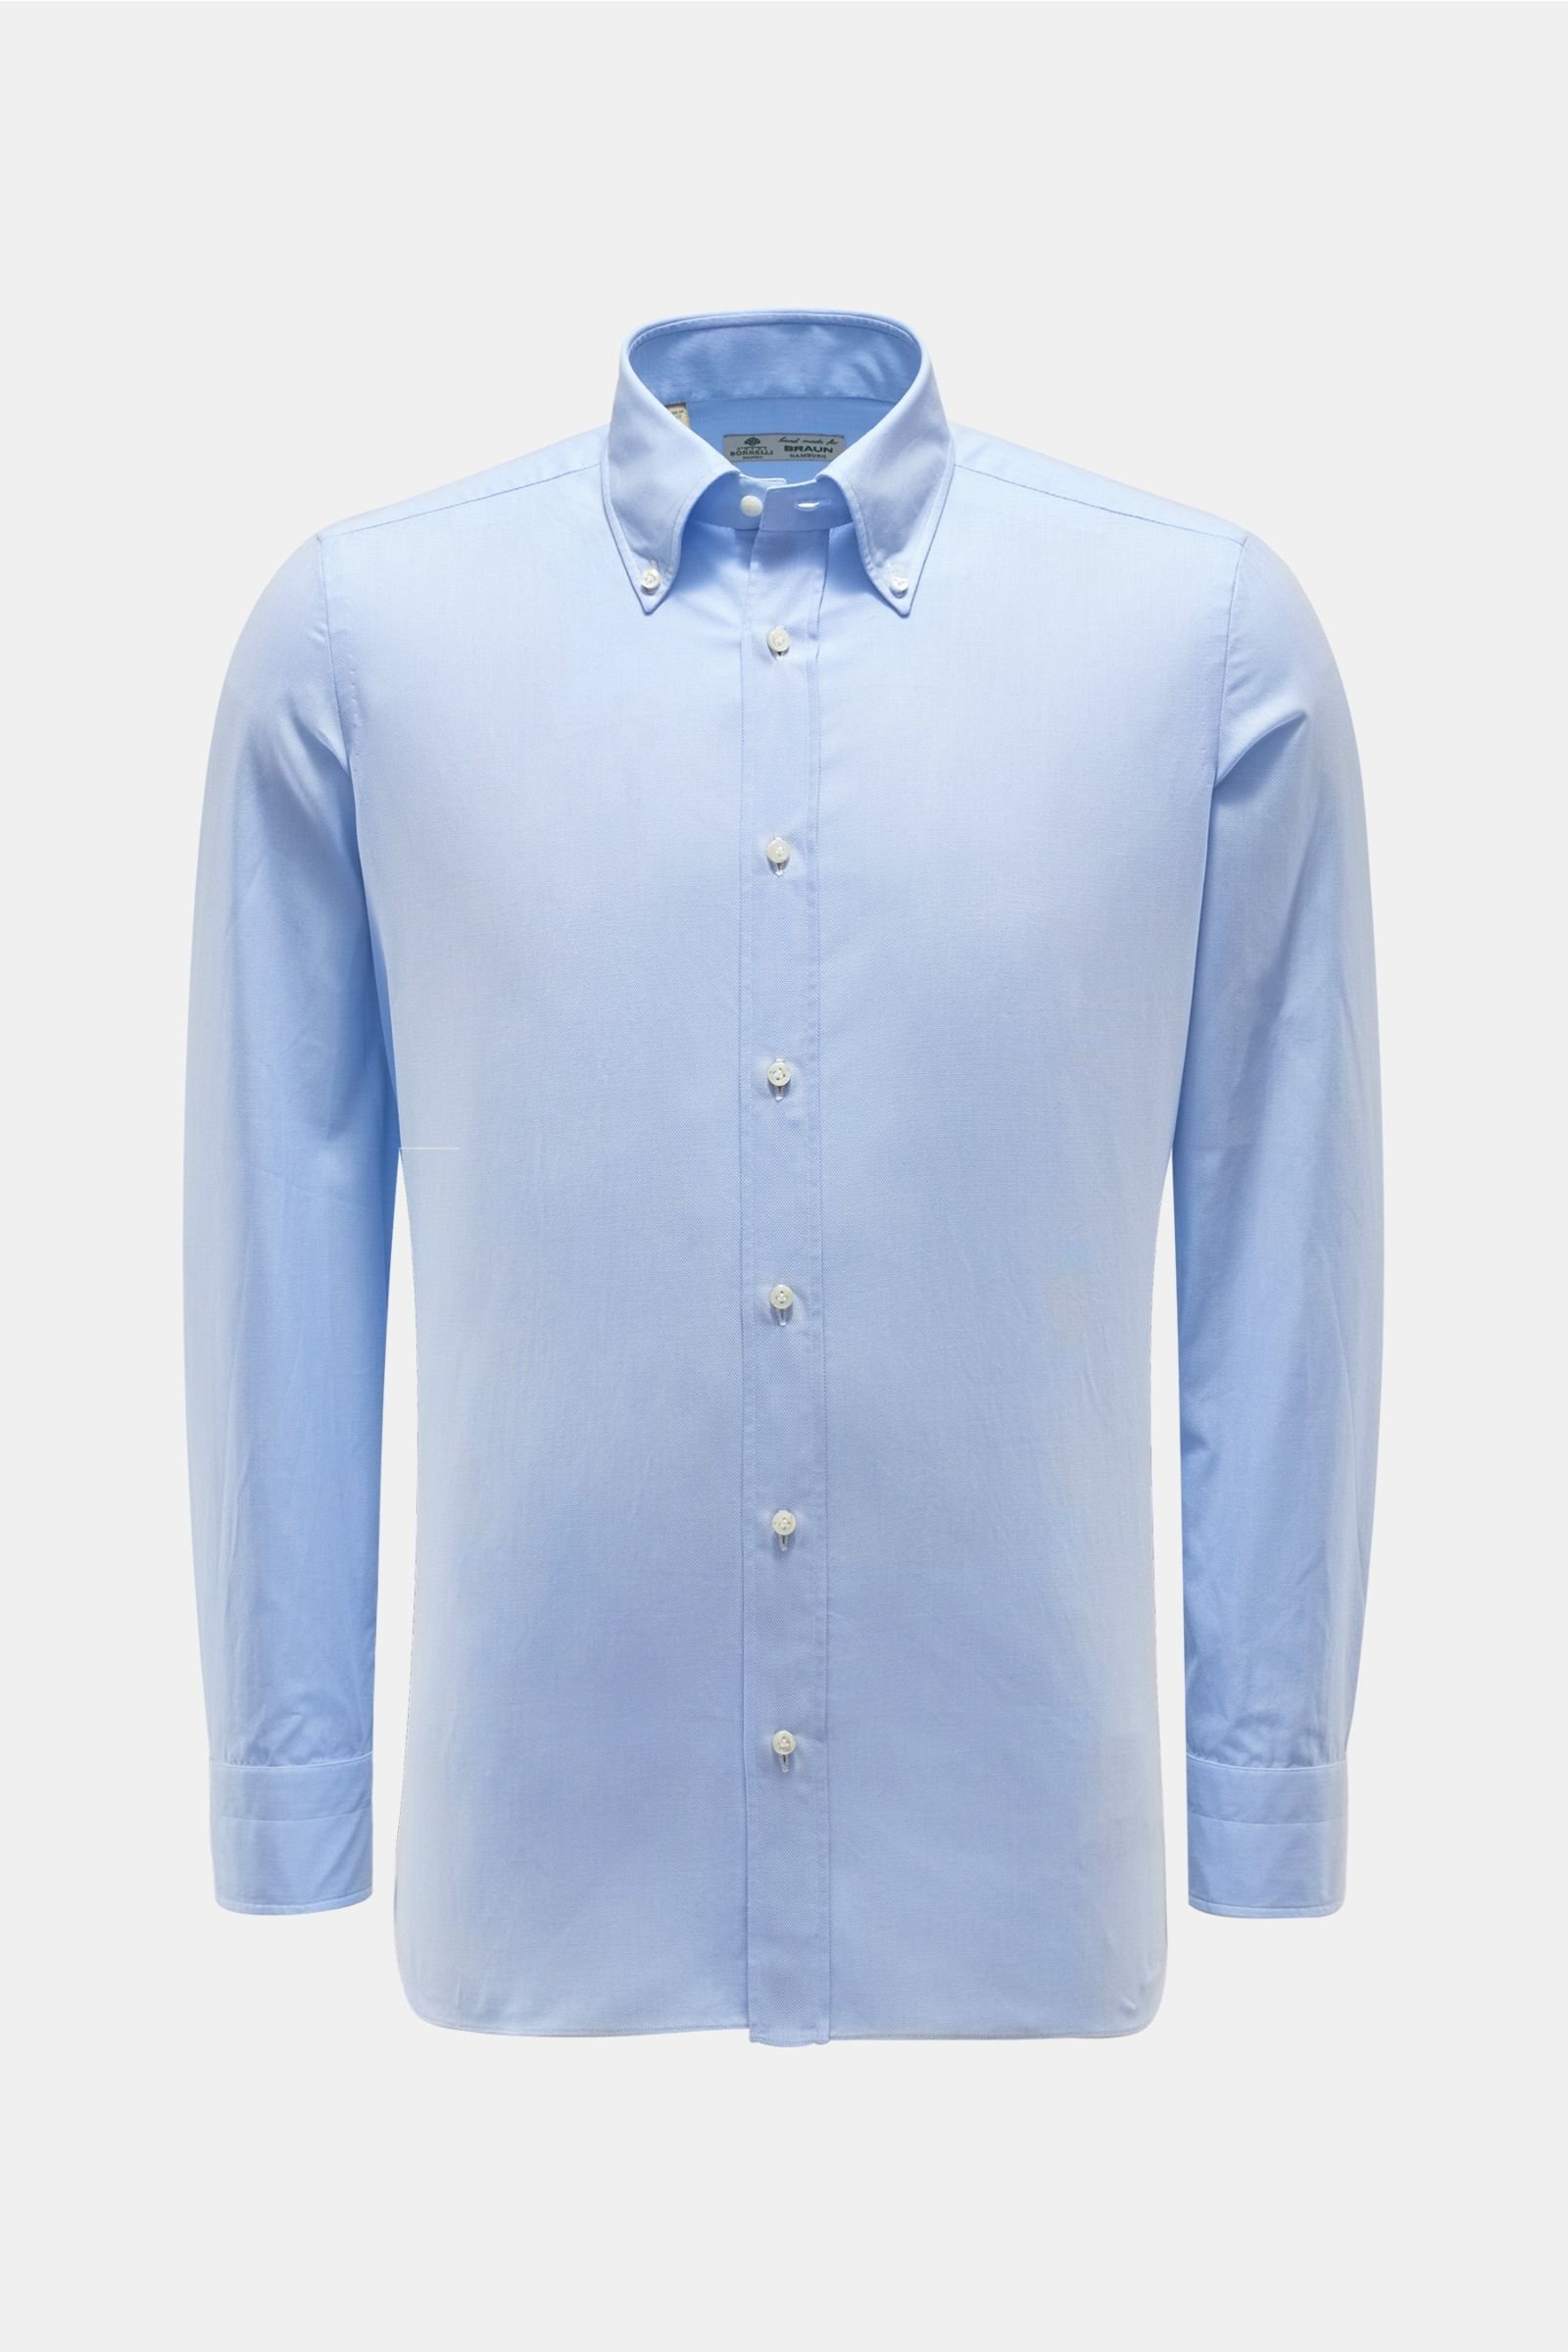 Piqué shirt button-down collar light blue